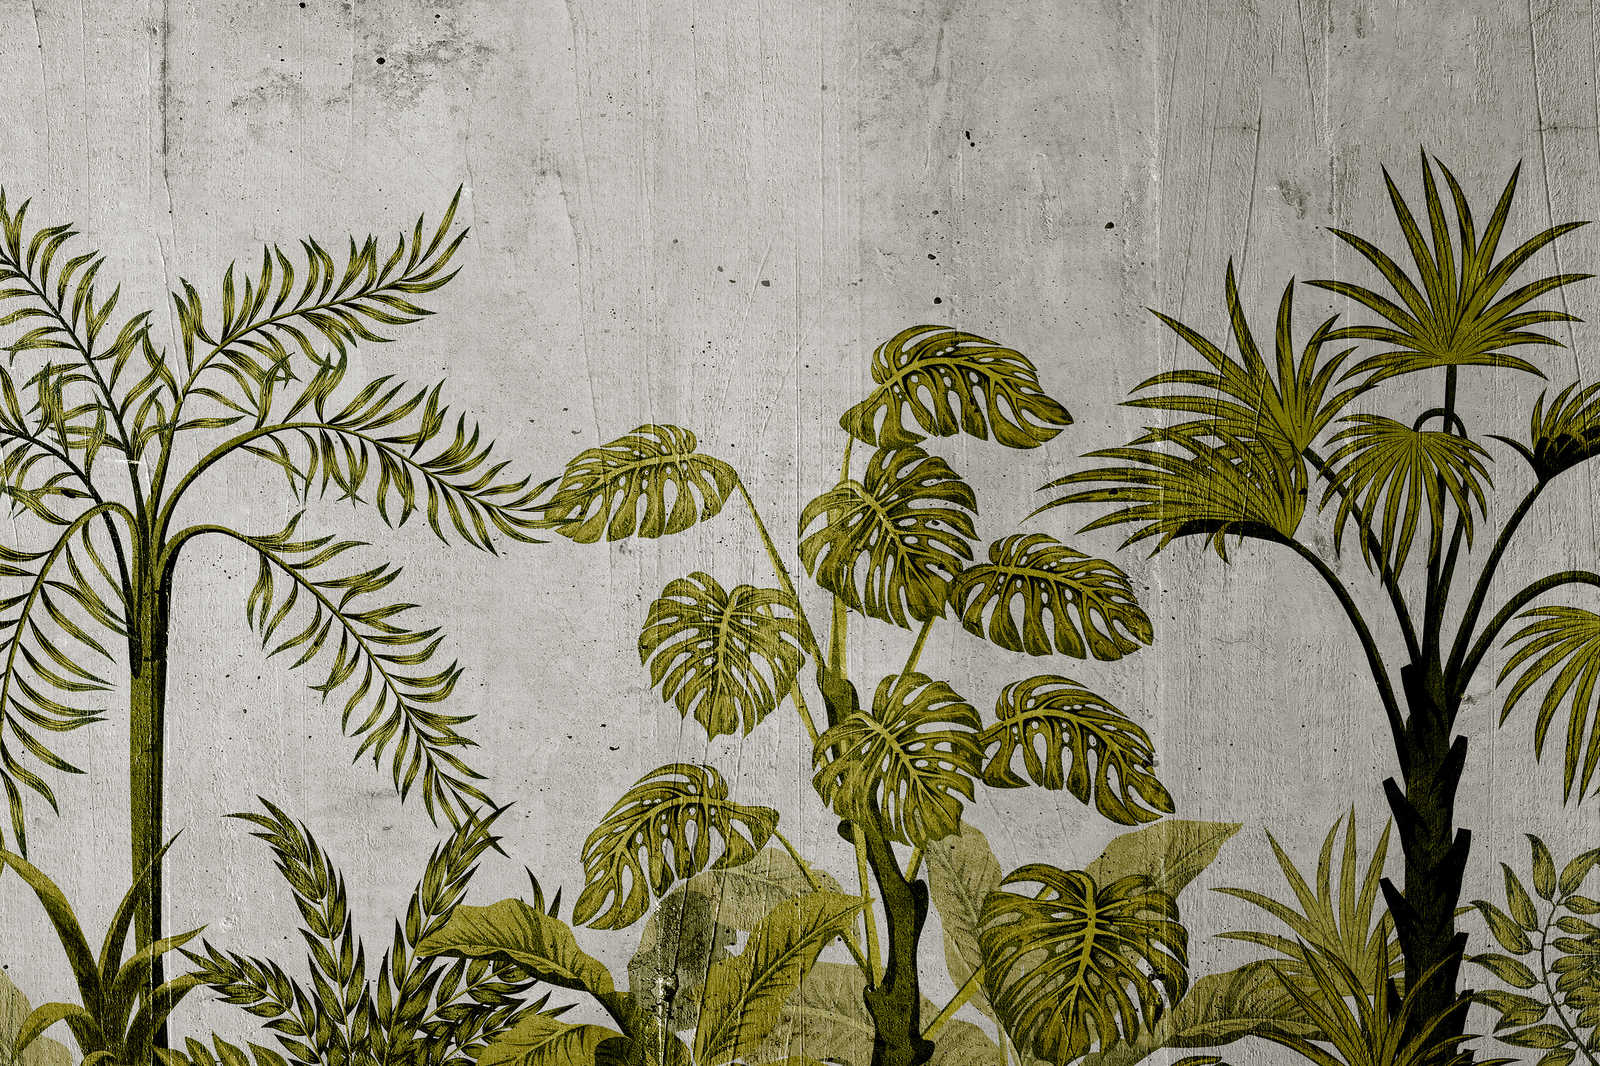             Quadro su tela con motivo jungle su sfondo in cemento - 0,90 m x 0,60 m
        